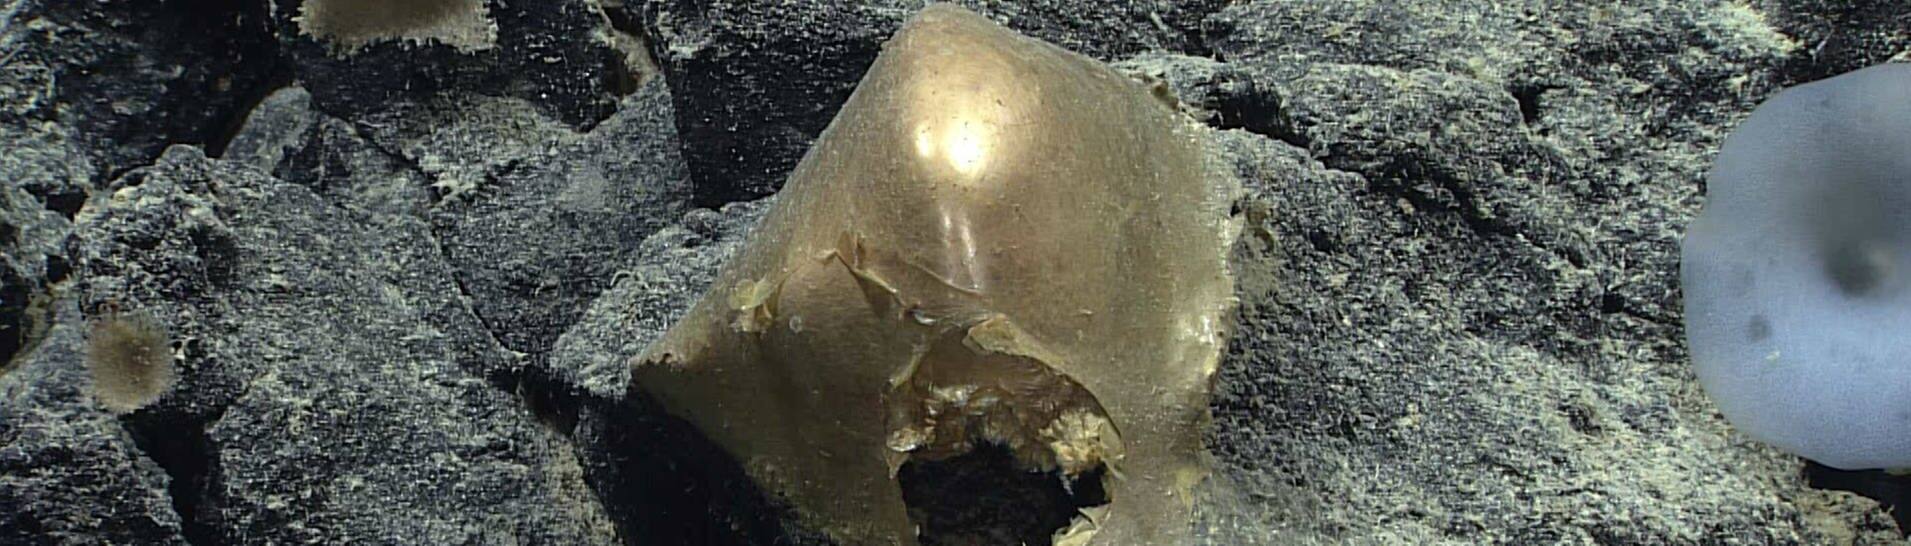 Das ist das goldene Eis, das die Forscher auf dem Meeresgrund in Alaska gefunden haben.  (Foto: NOOA)